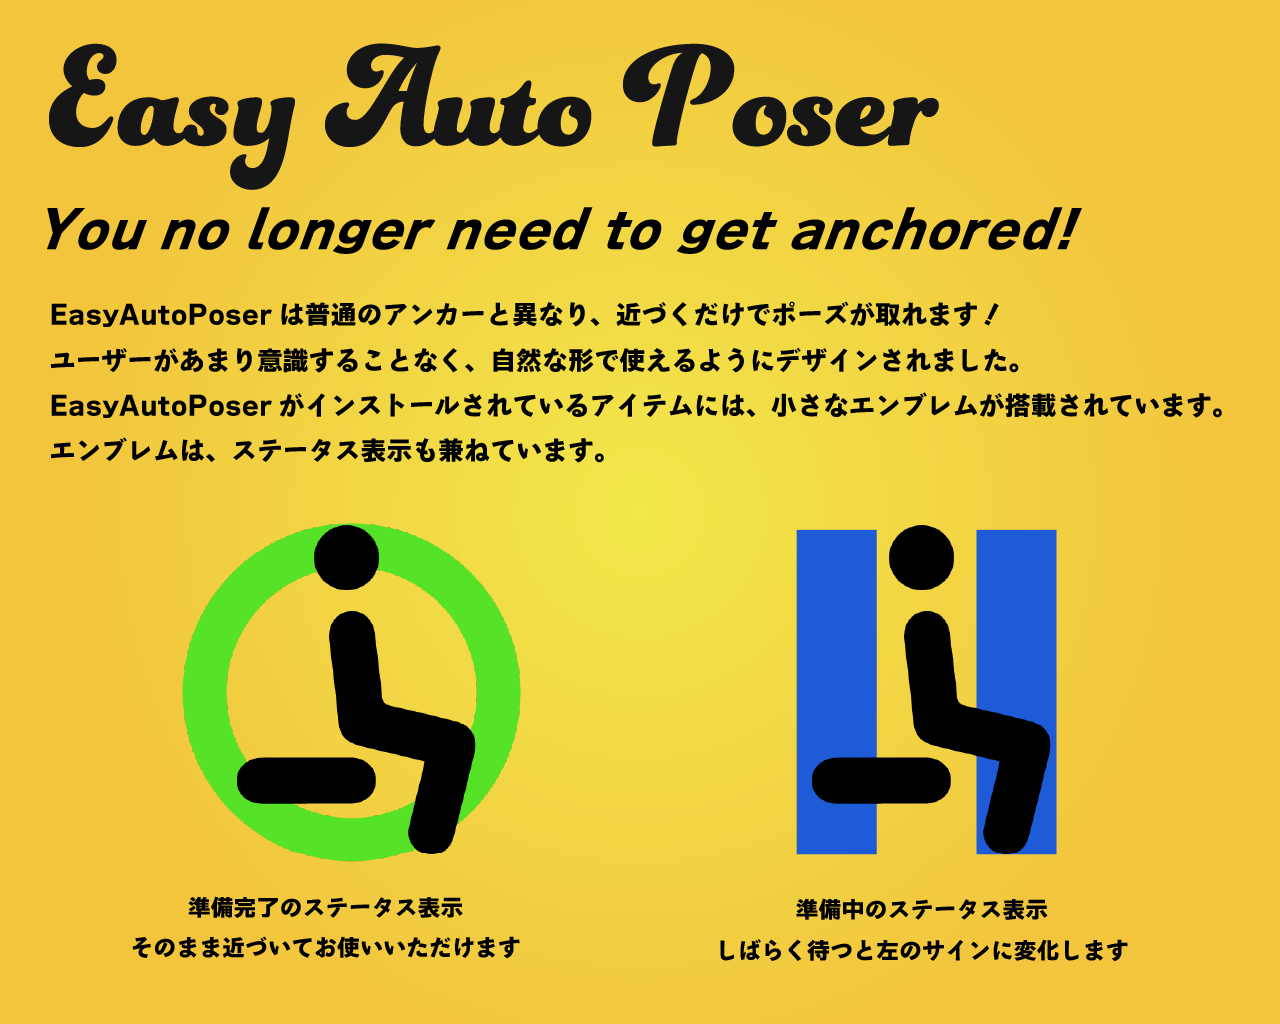 Easy Auto Poser